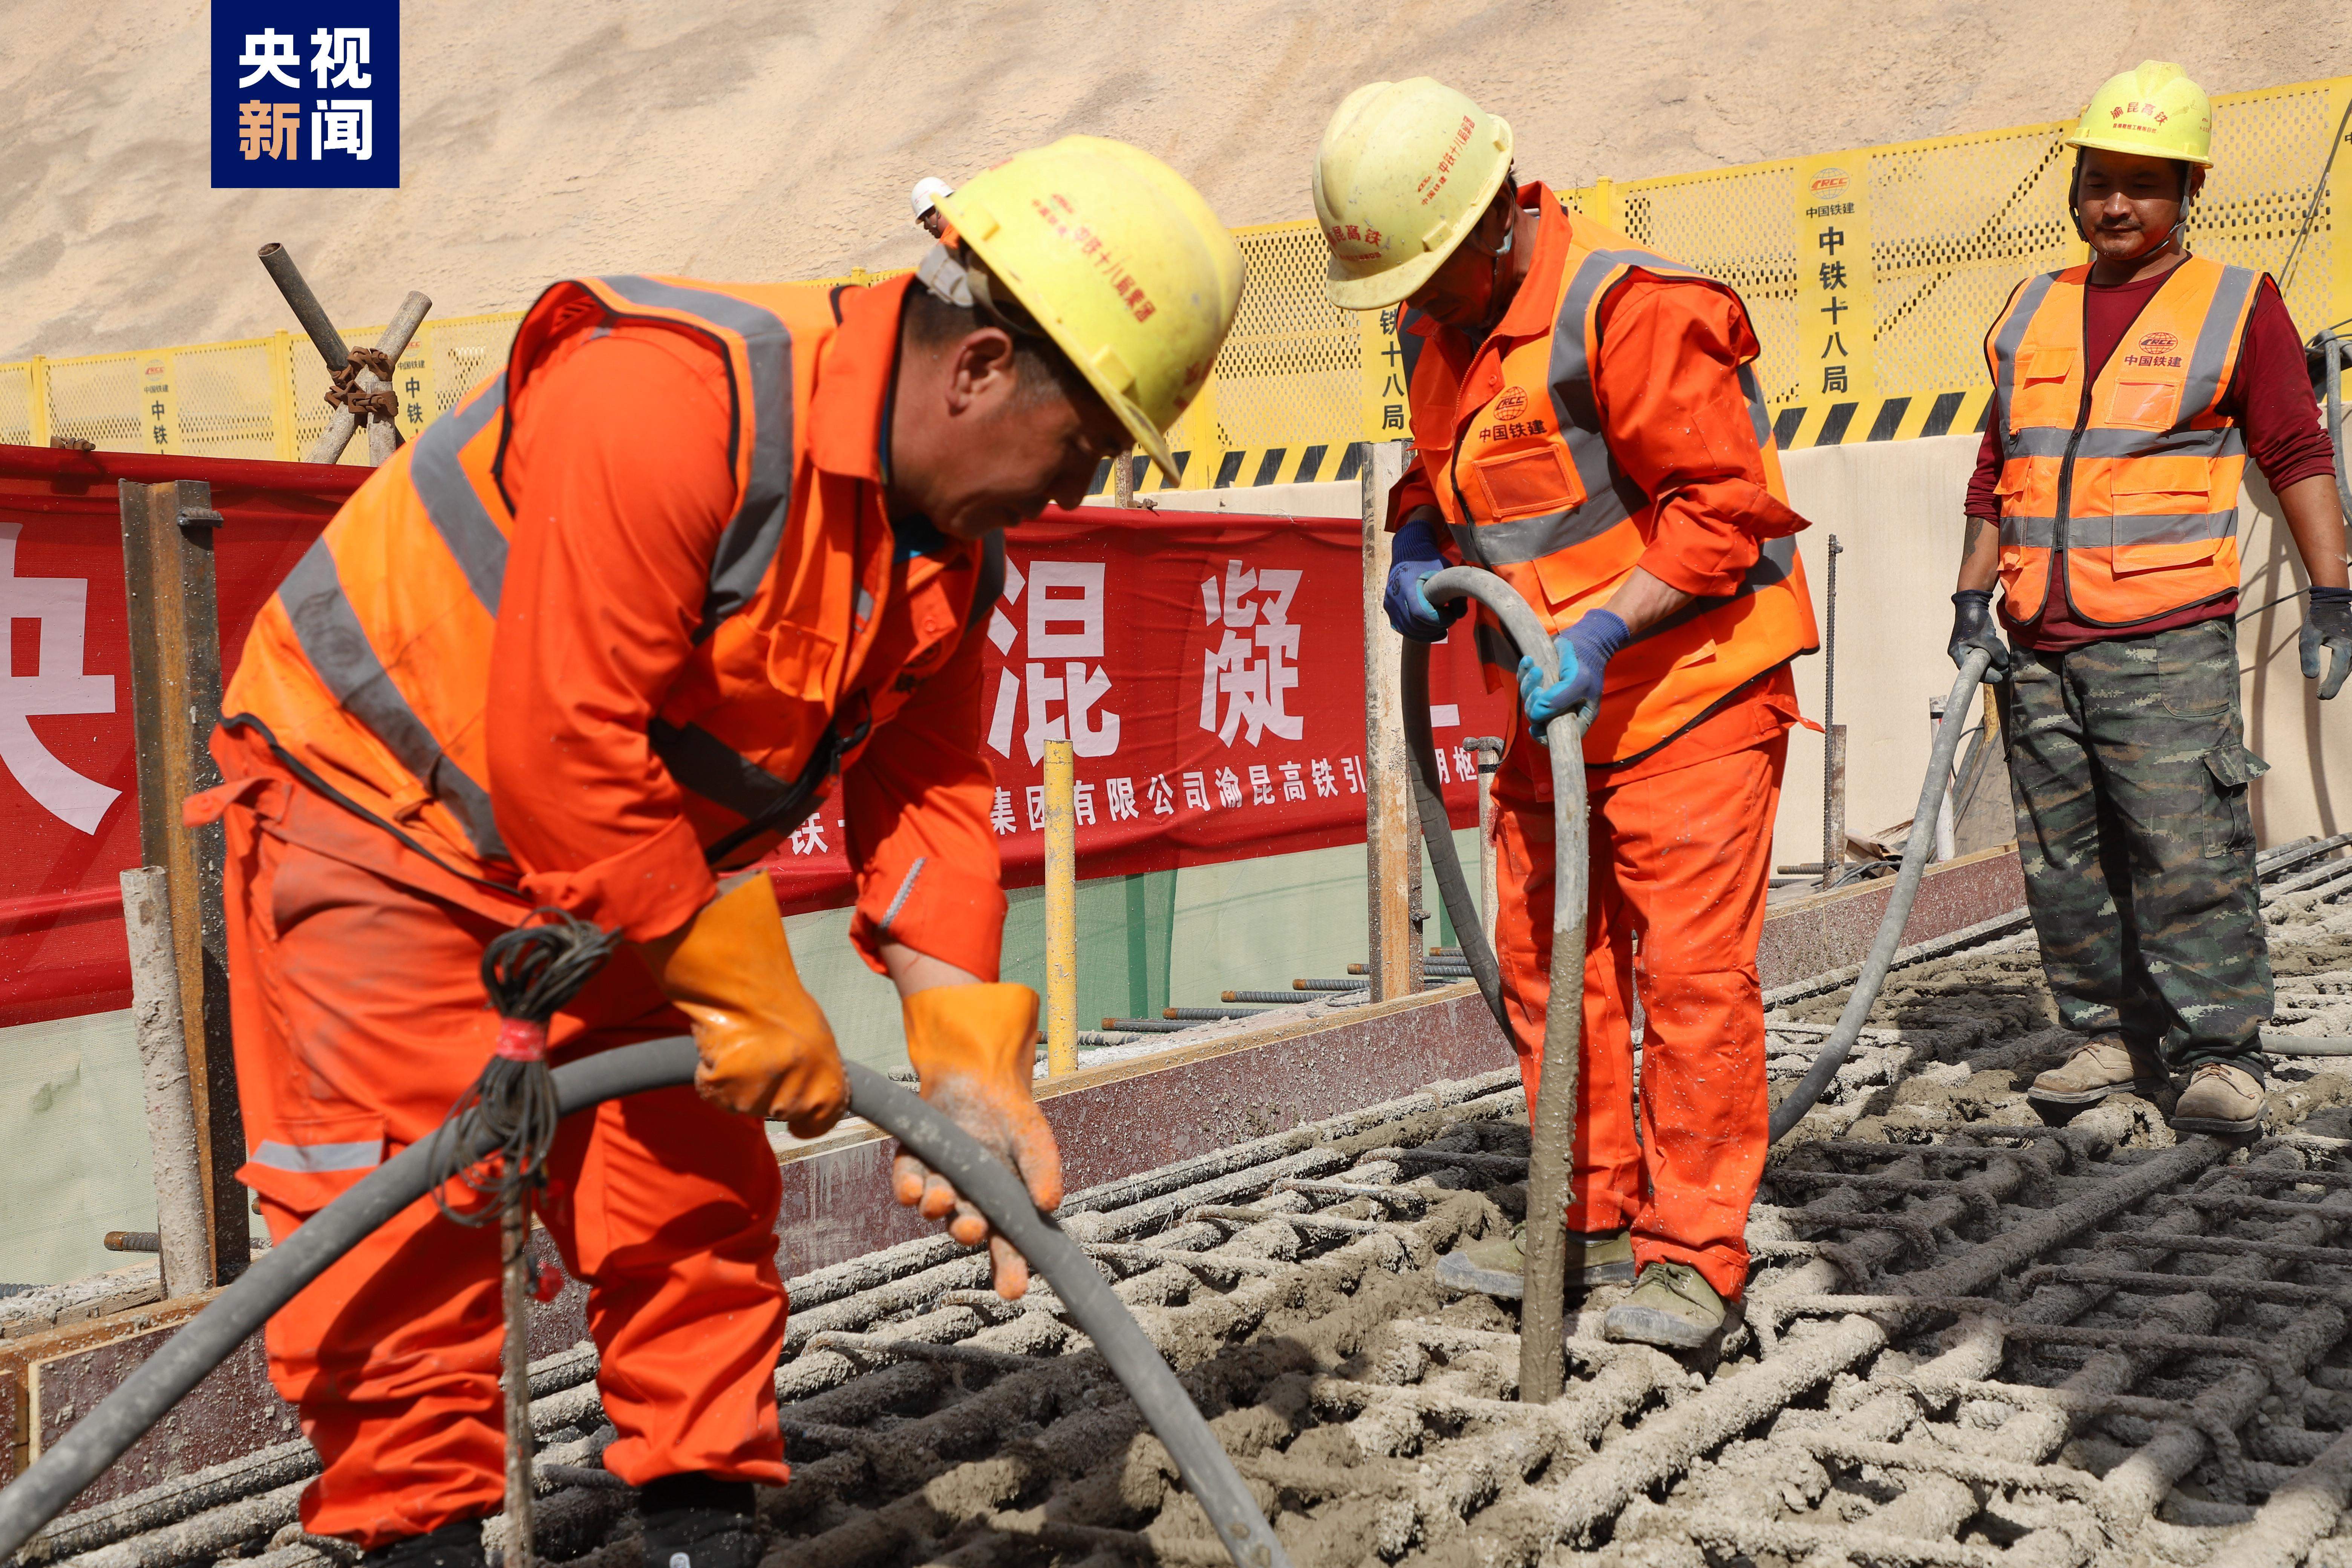 渝昆高铁长水机场站正式进入主体结构施工阶段